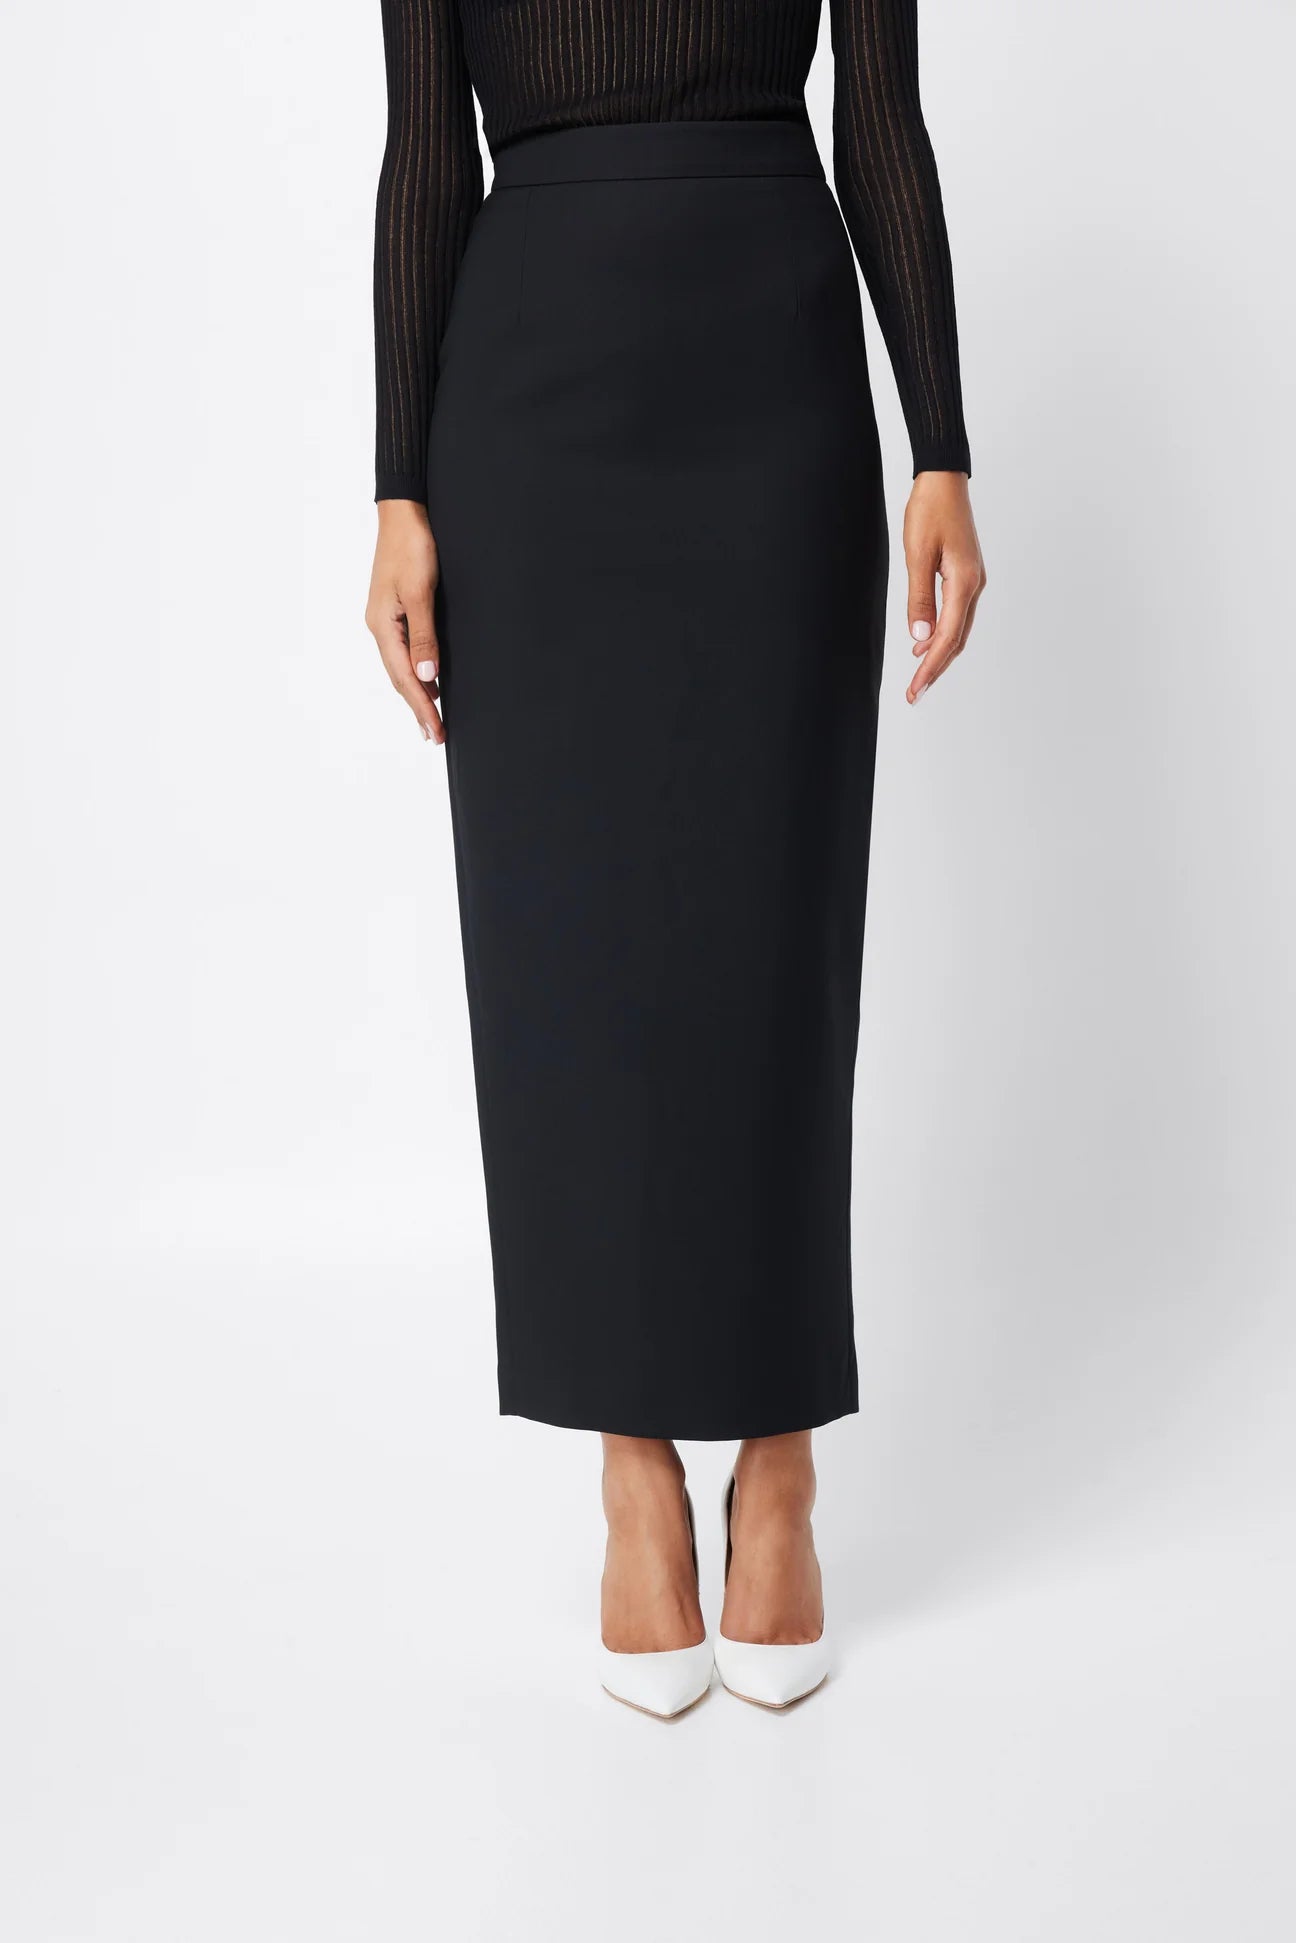 Notting Hill midi skirt, black